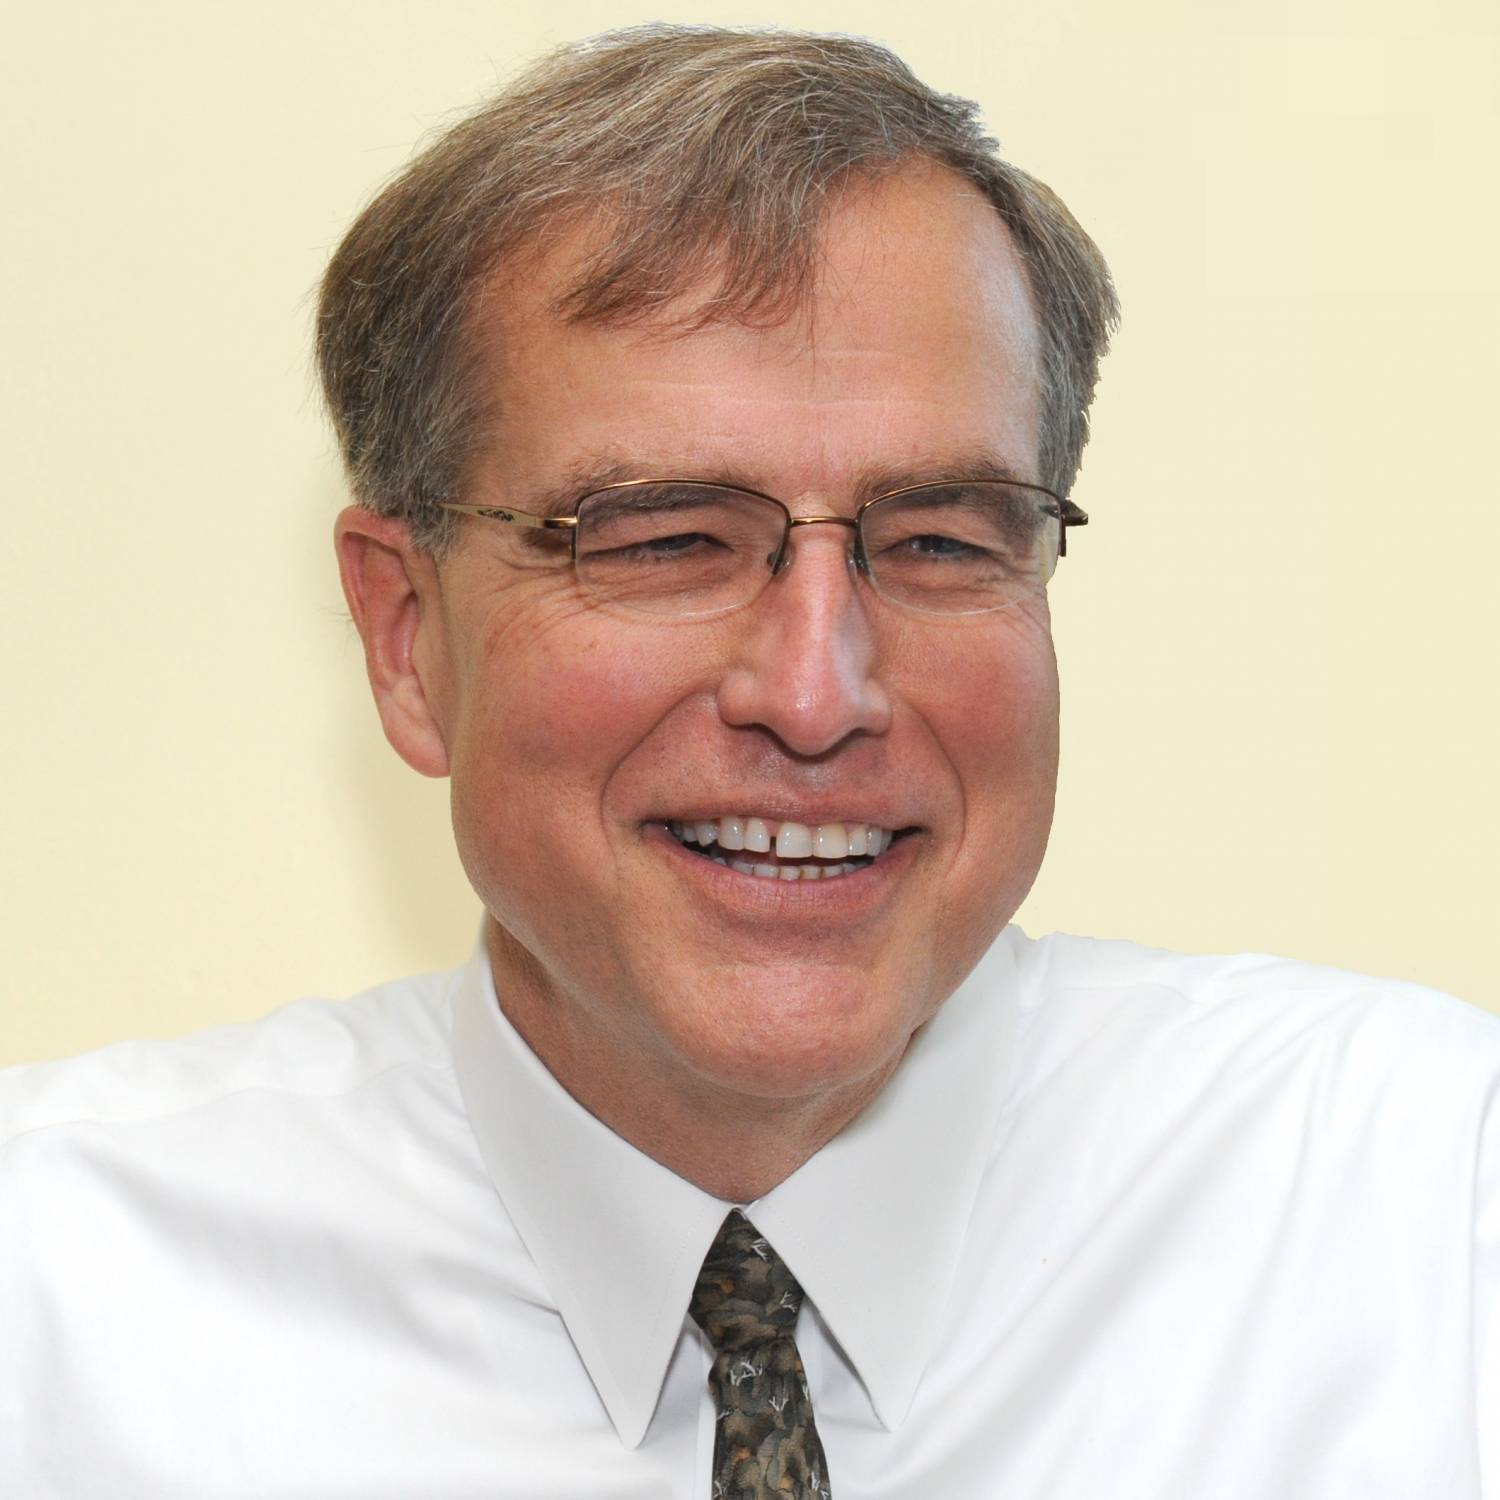 Tom Neltner, Senior Advisor on Regulatory Affairs, National Center for Healthy Housing